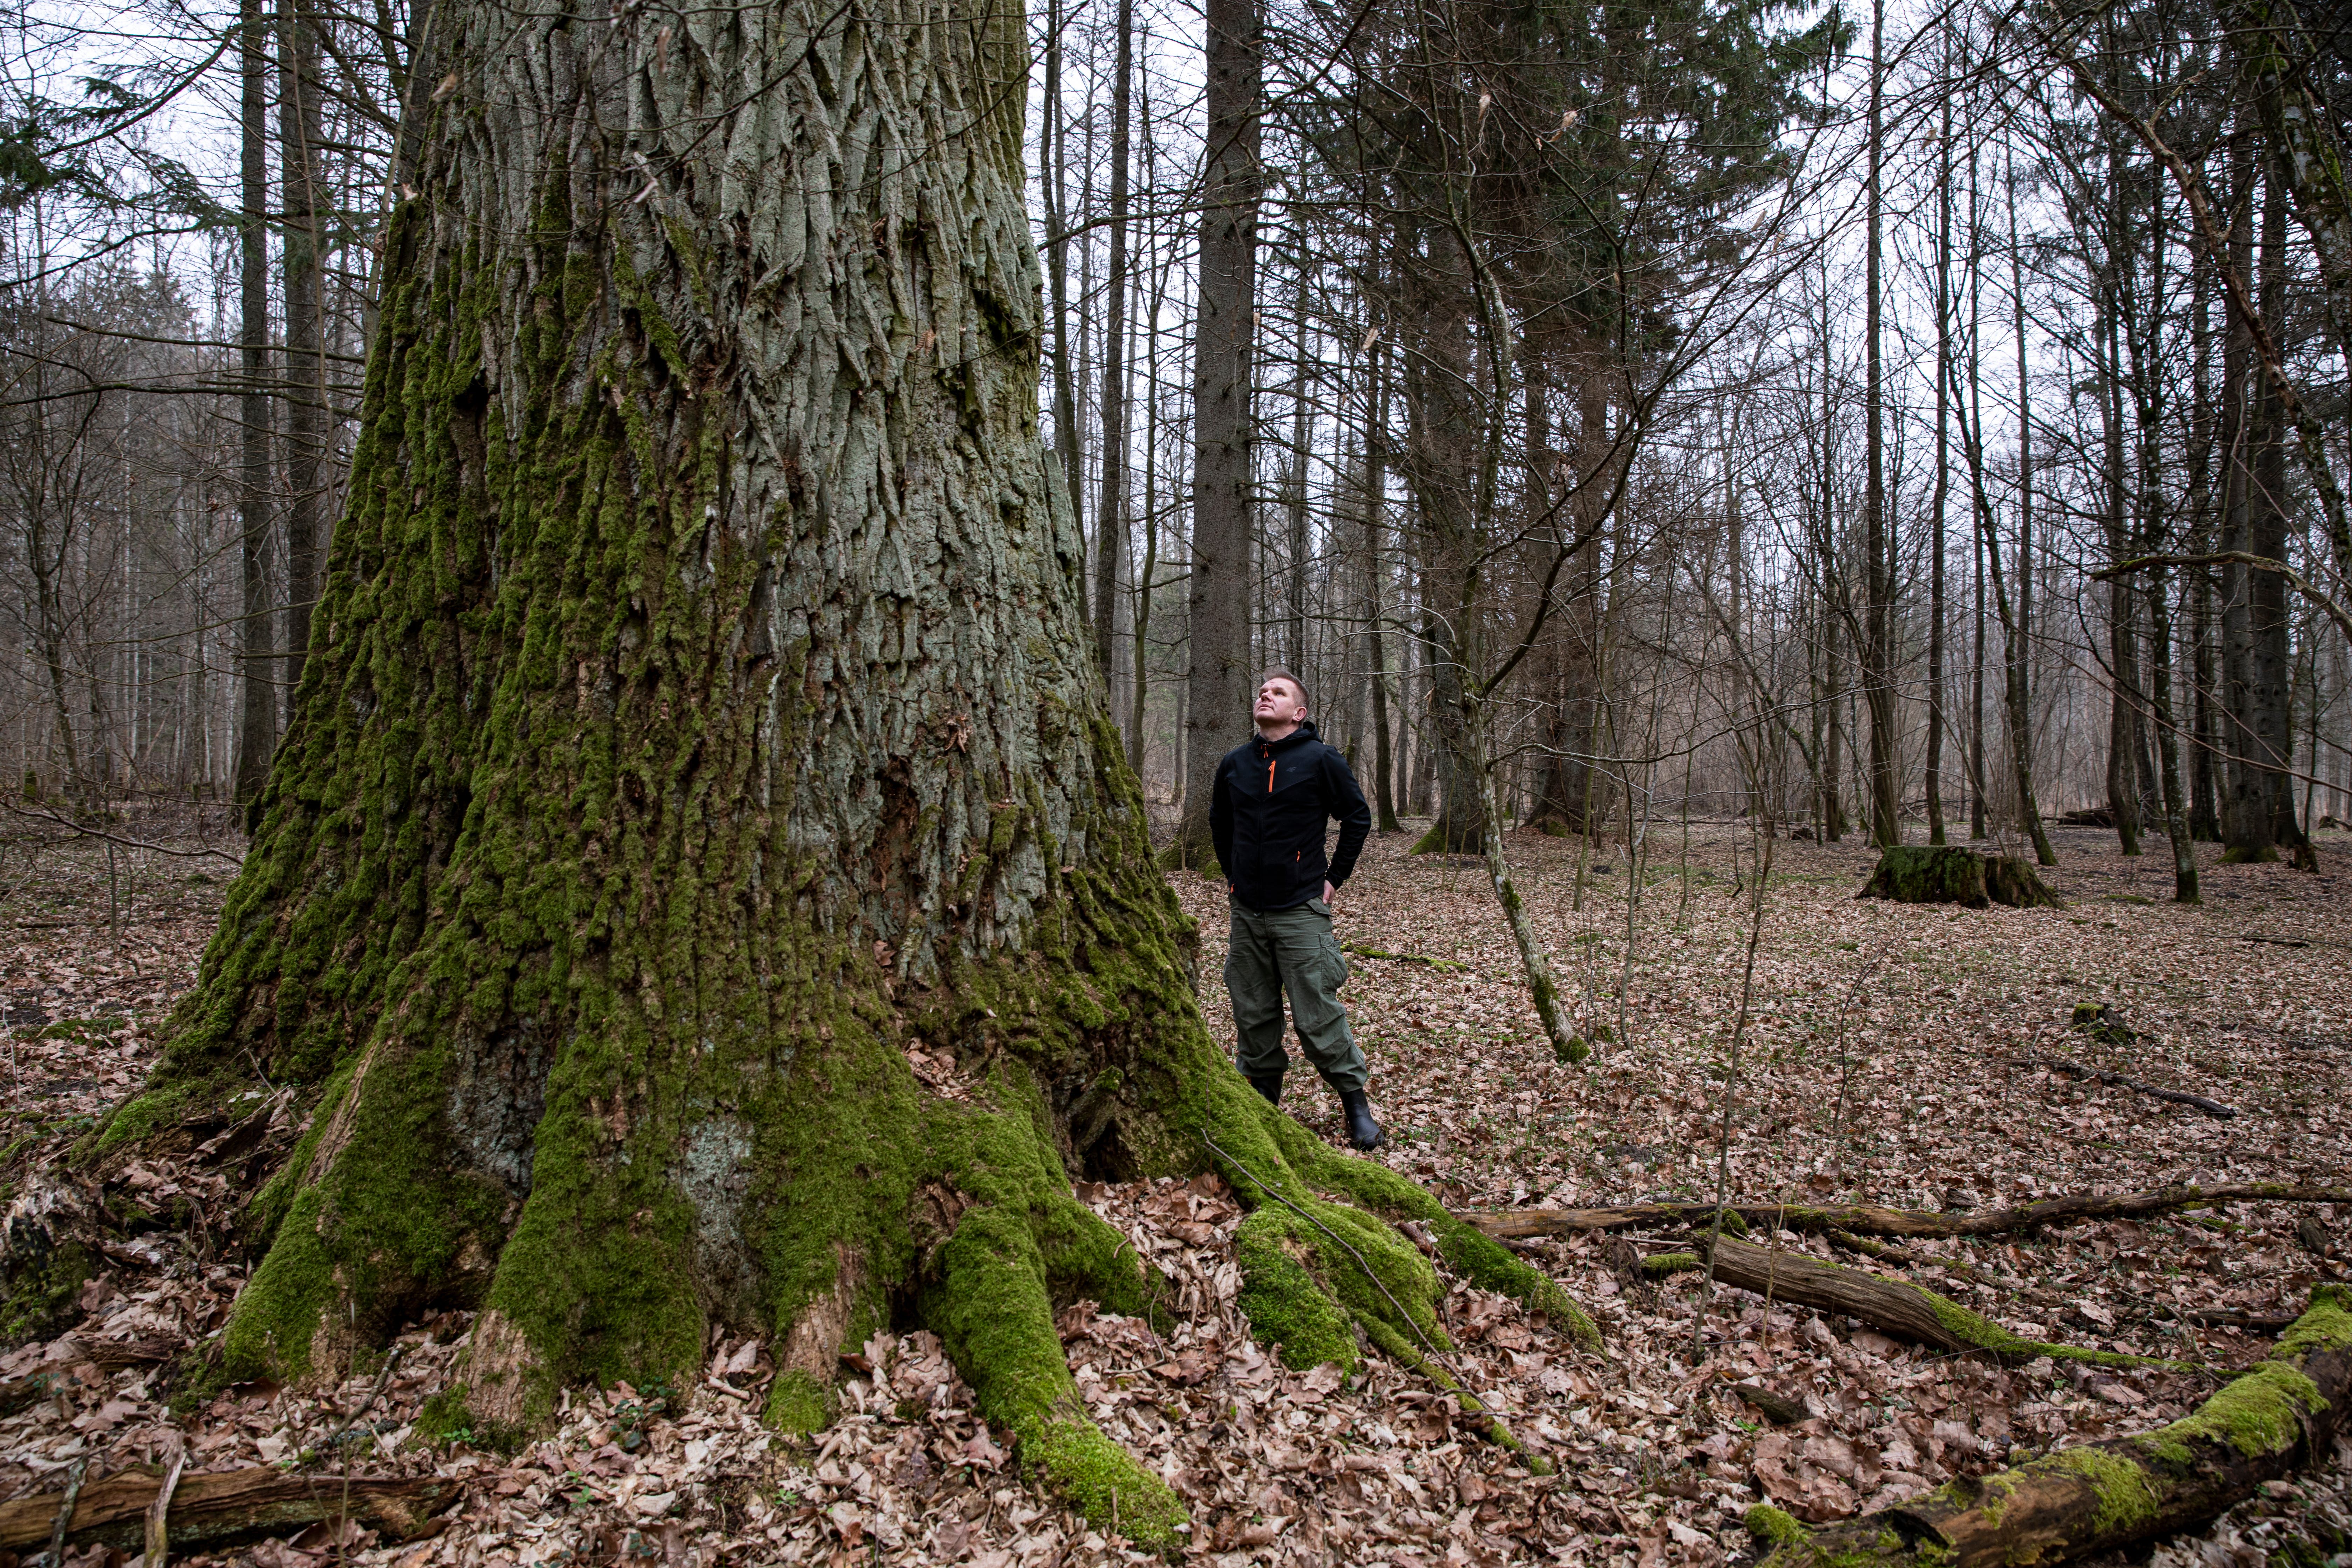 Uralte Bäume und wilde Tiere, die es in Westeuropa nicht mehr gibt: Das ist der abgelegene Teil Polens.